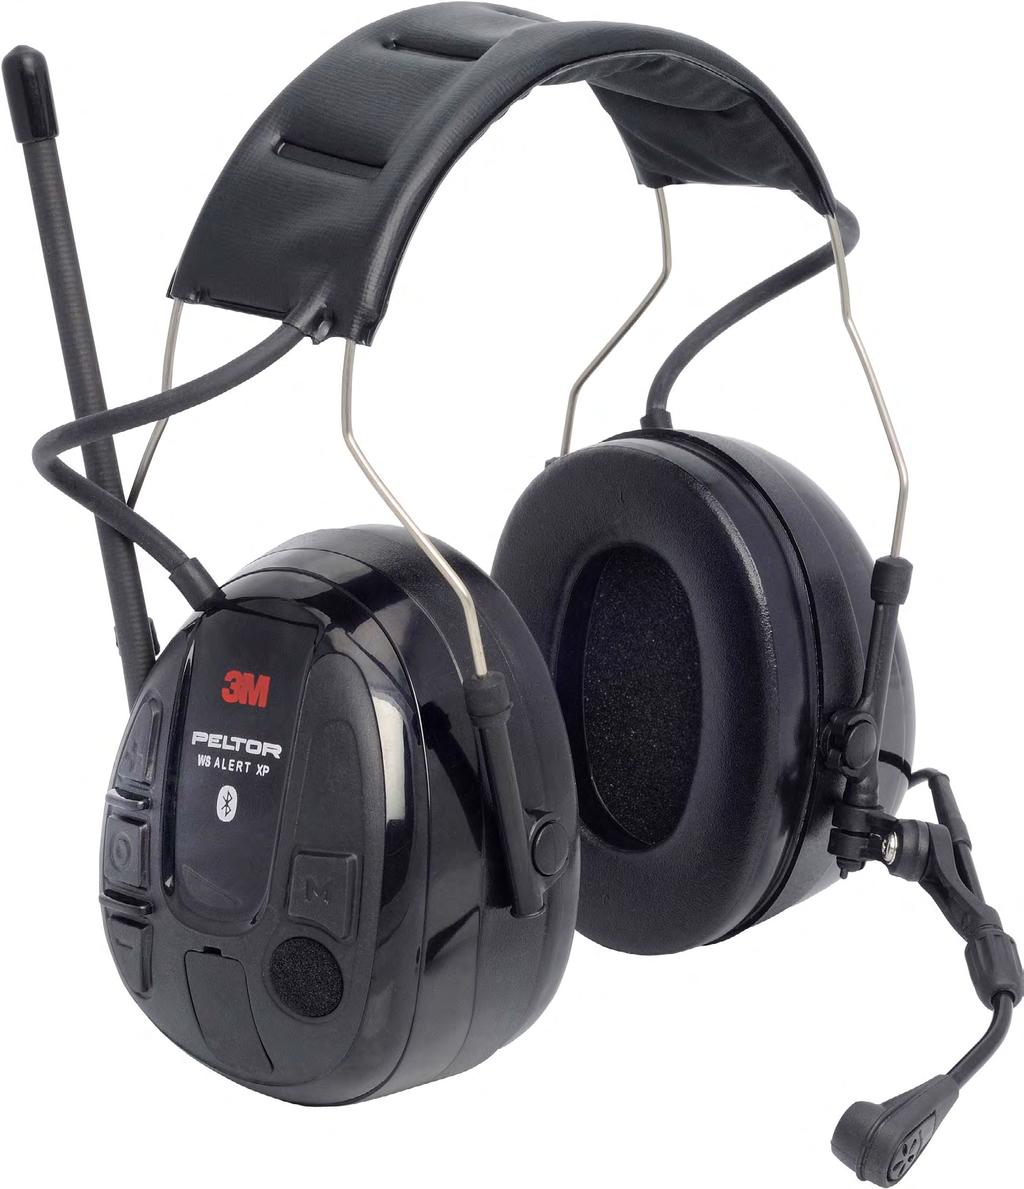 Bluetooth Headsets 3M PELTOR WS Alert XP SNR: 29 Speicherfunktion zur Schnellwahl von Radiosendern Aufladen der Batterie via Kabel und Steckdose oder USB Bluetooth fu r drahtlose Anrufe im